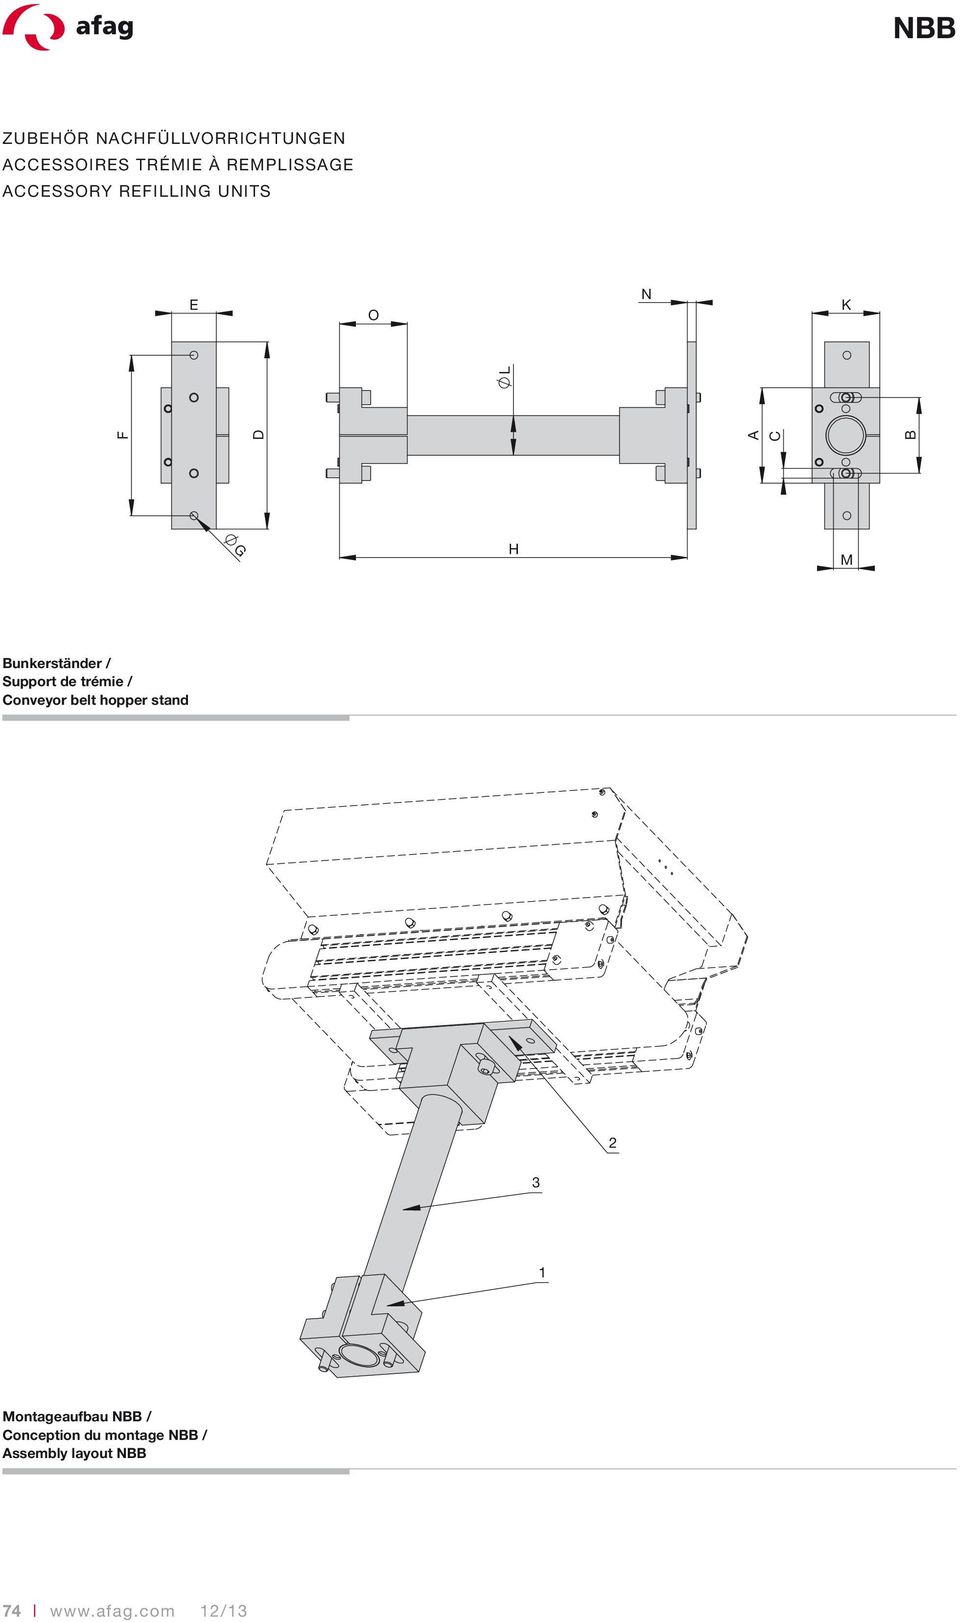 Support de trémie / Conveyor belt hopper stand 2 3 1 Montageaufbau